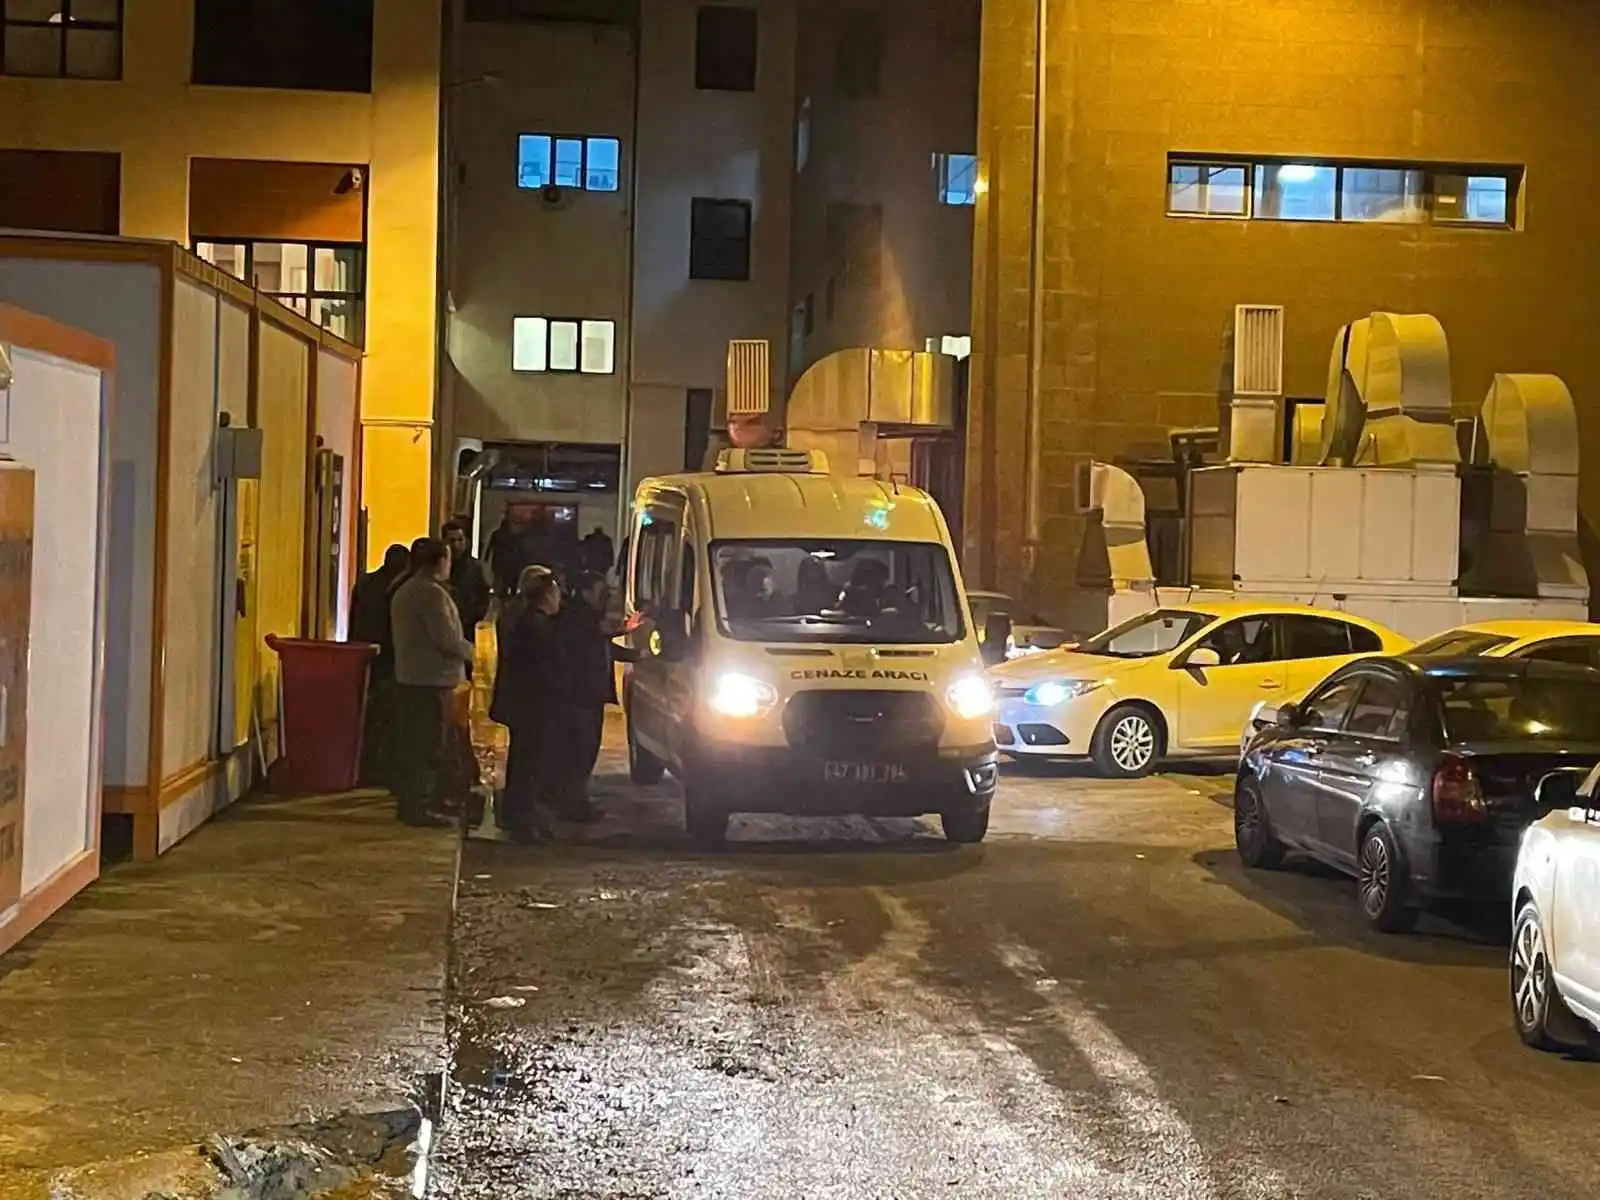 Mardin’de 5 kişinin öldüğü saldırıda gözaltı sayısı 6’ya yükseldi
